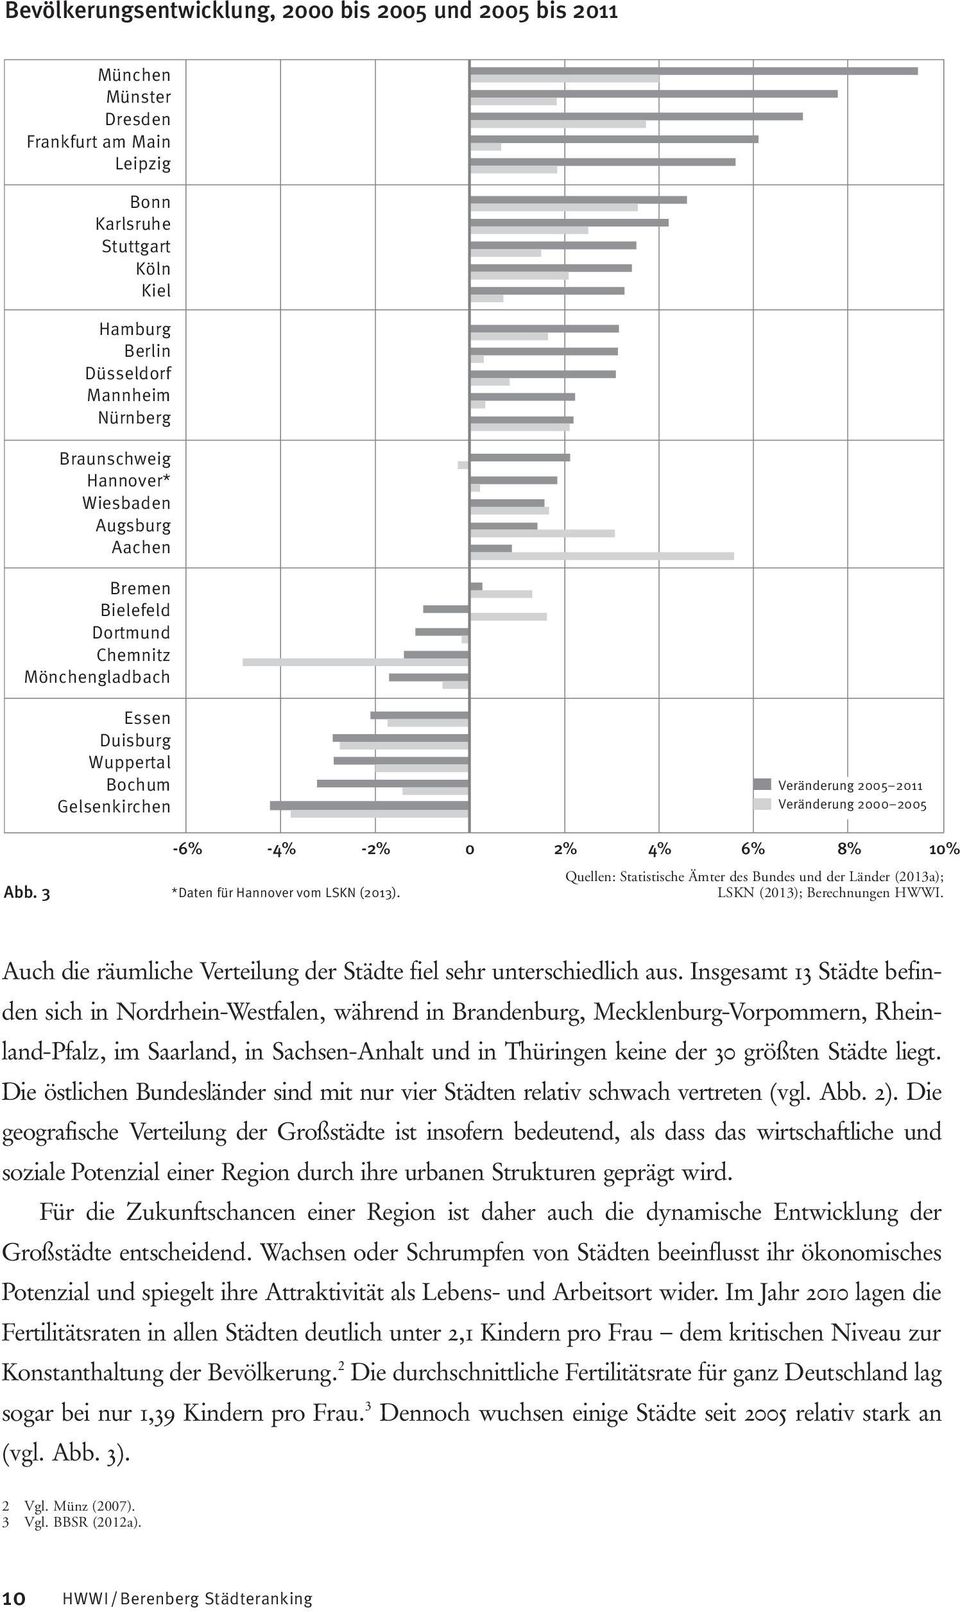 3-6% -4% -2% 0 2% 4% 6% 8% 10% Quellen: Statistische Ämter des Bundes und der Länder (2013a); *Daten für Hannover vom LSKN (2013). LSKN (2013); Berechnungen HWWI.